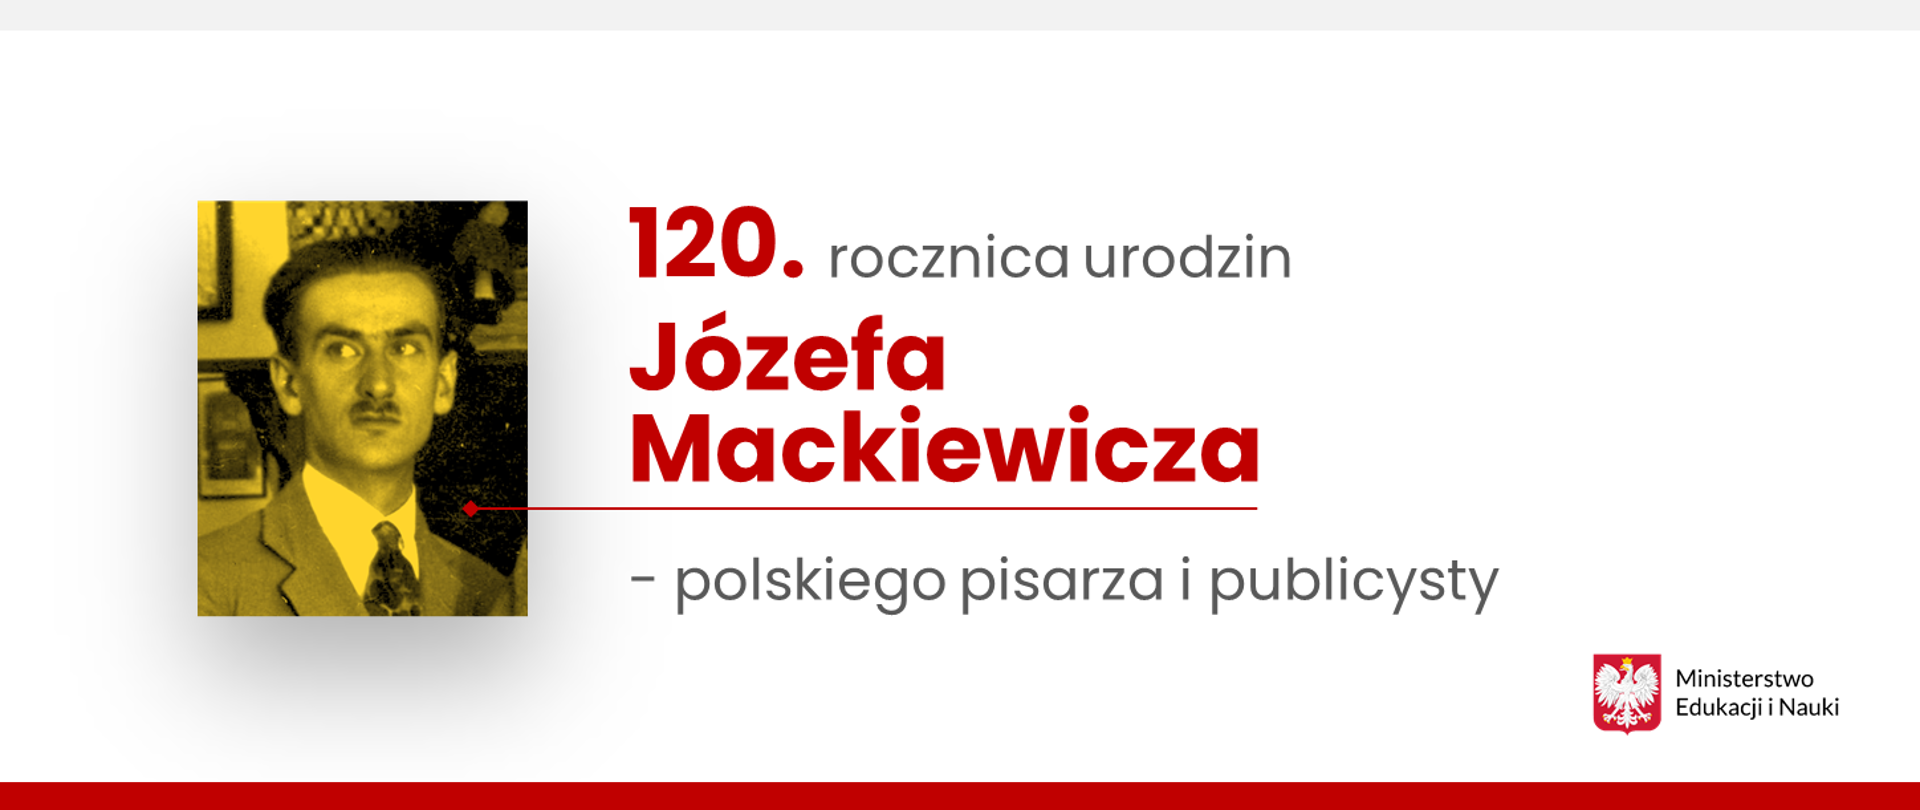 Grafika z napisem 120. rocznica urodzin Józefa Mackiewicza i jego zdjęciem.